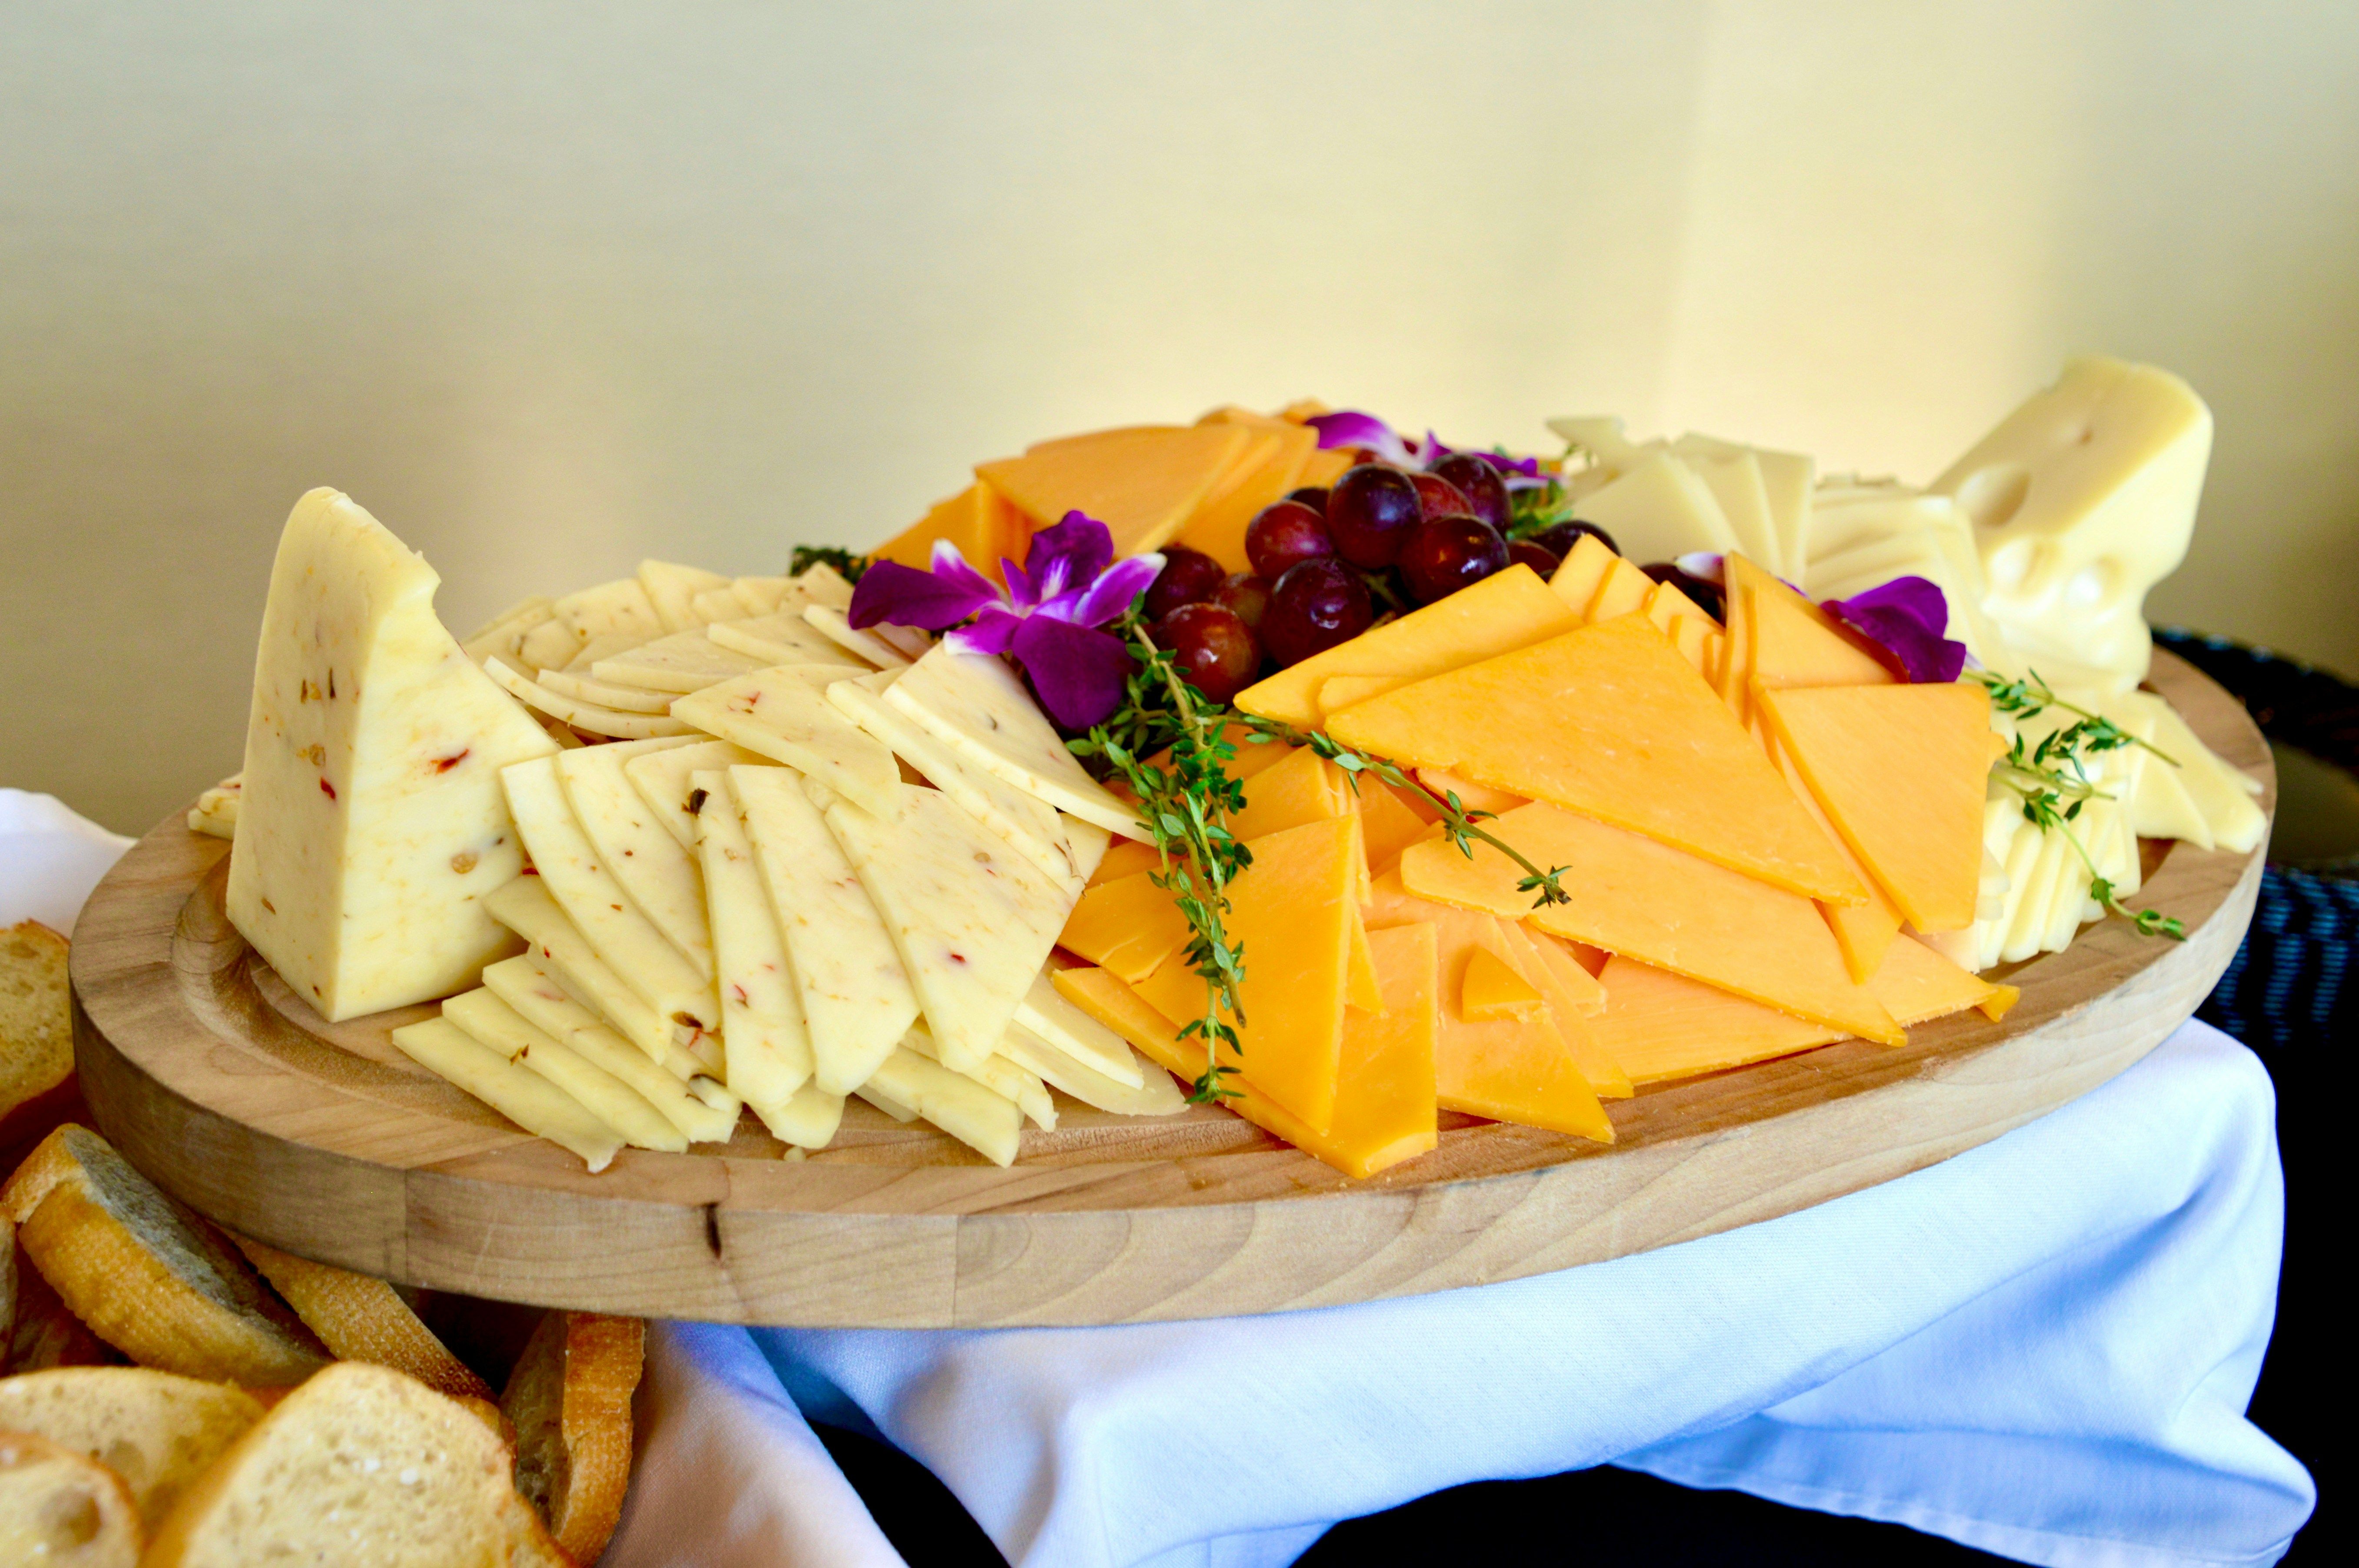 Как быстро и ровно порезать сыр - австралийка придумала гениальный способ - Новости Вкусно